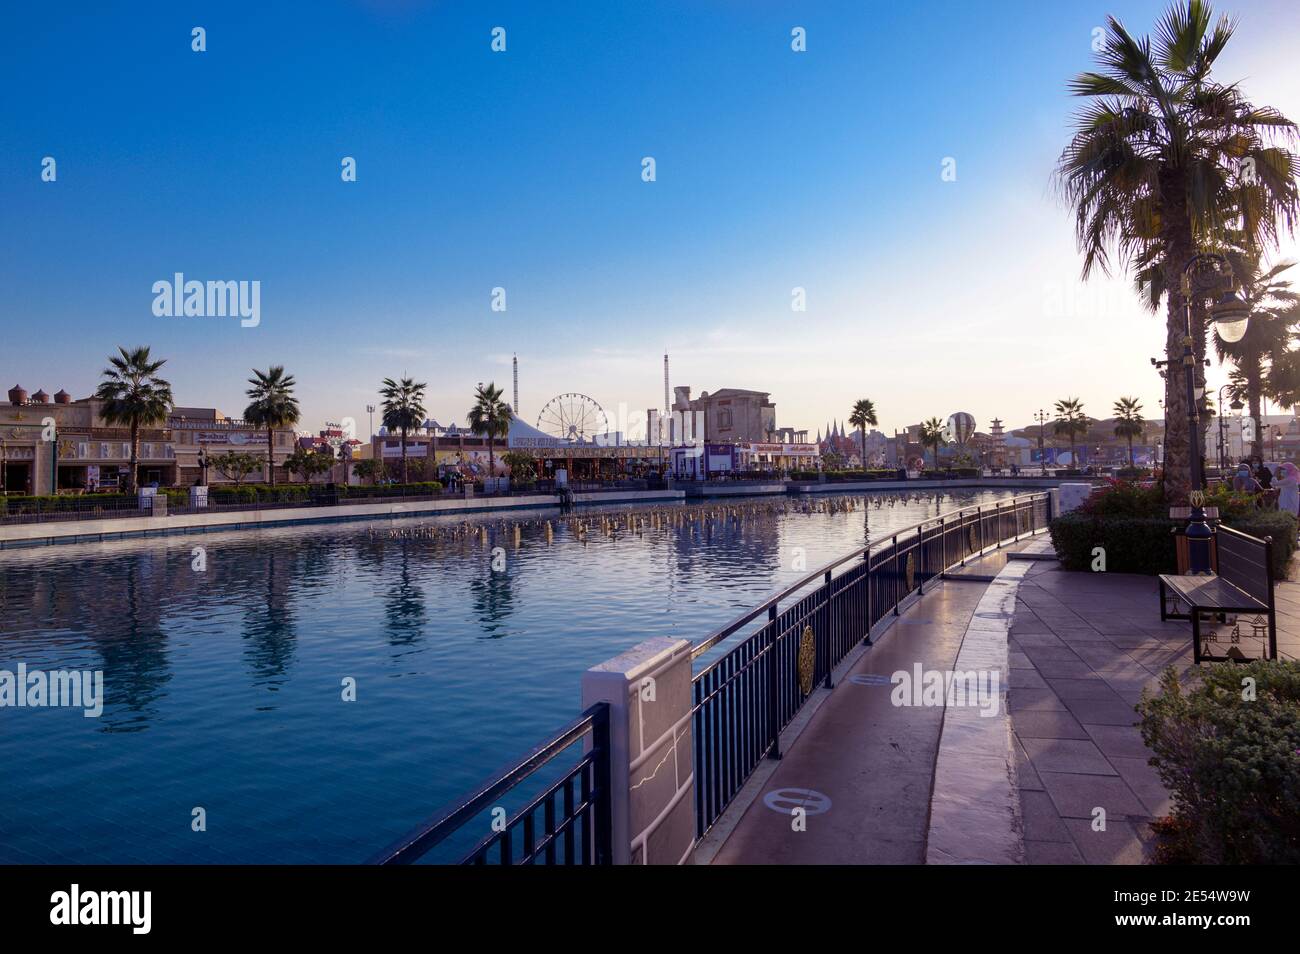 Belle vue sur les pavillons, et Canal avec bateaux de plaisance dans le centre de divertissement du parc capturé au coucher du soleil à Global Village, Dubaï Banque D'Images